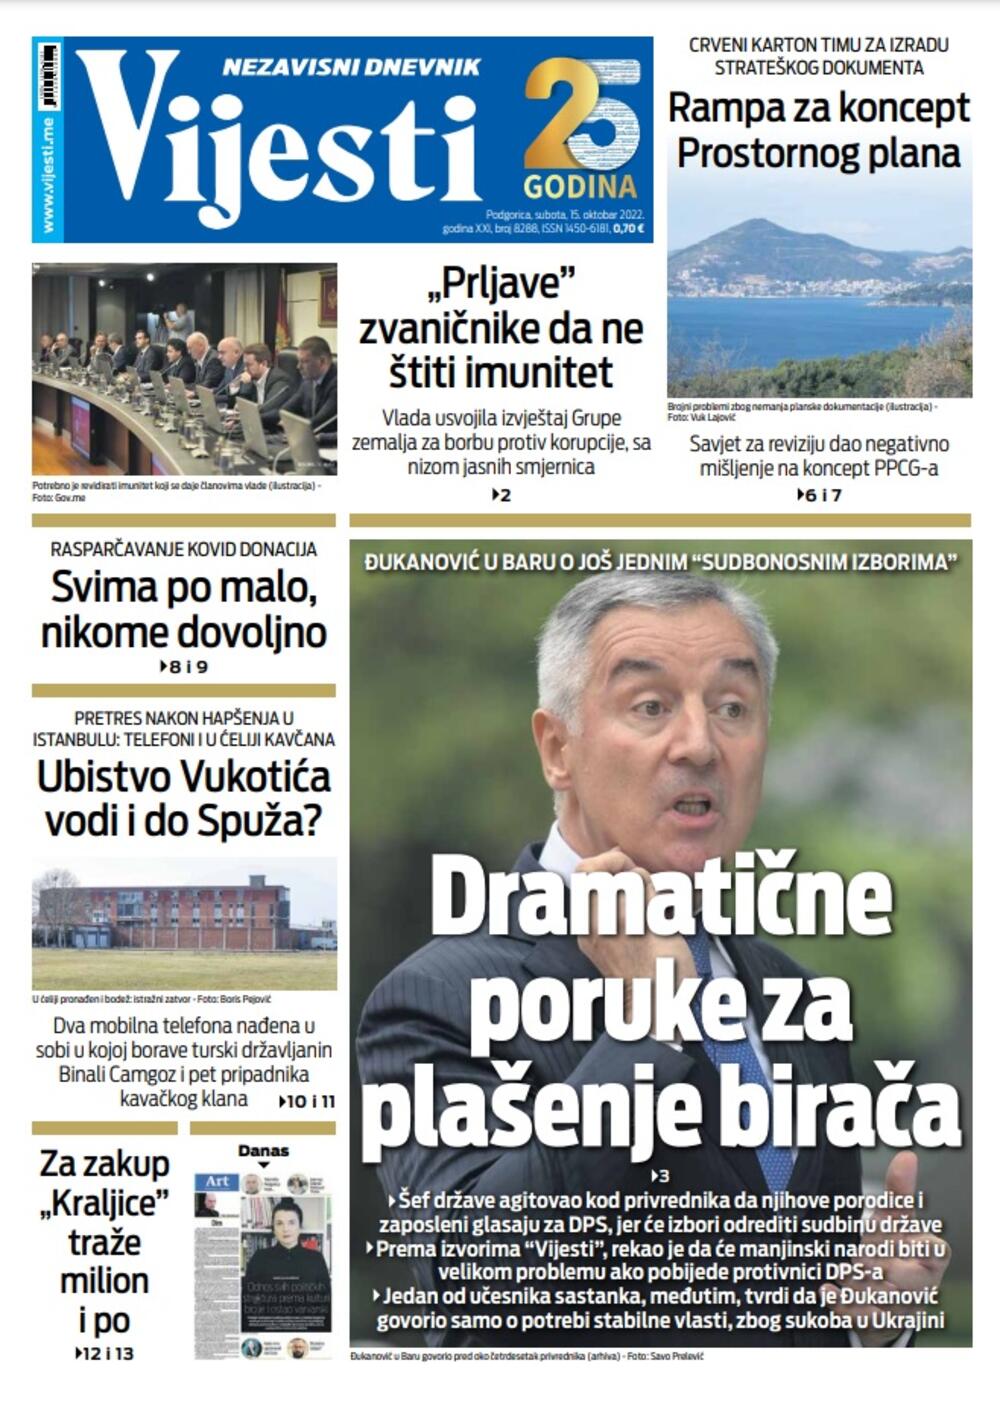 Naslovna strana "Vijesti" za 15. oktobar 2022. godine, Foto: Vijesti